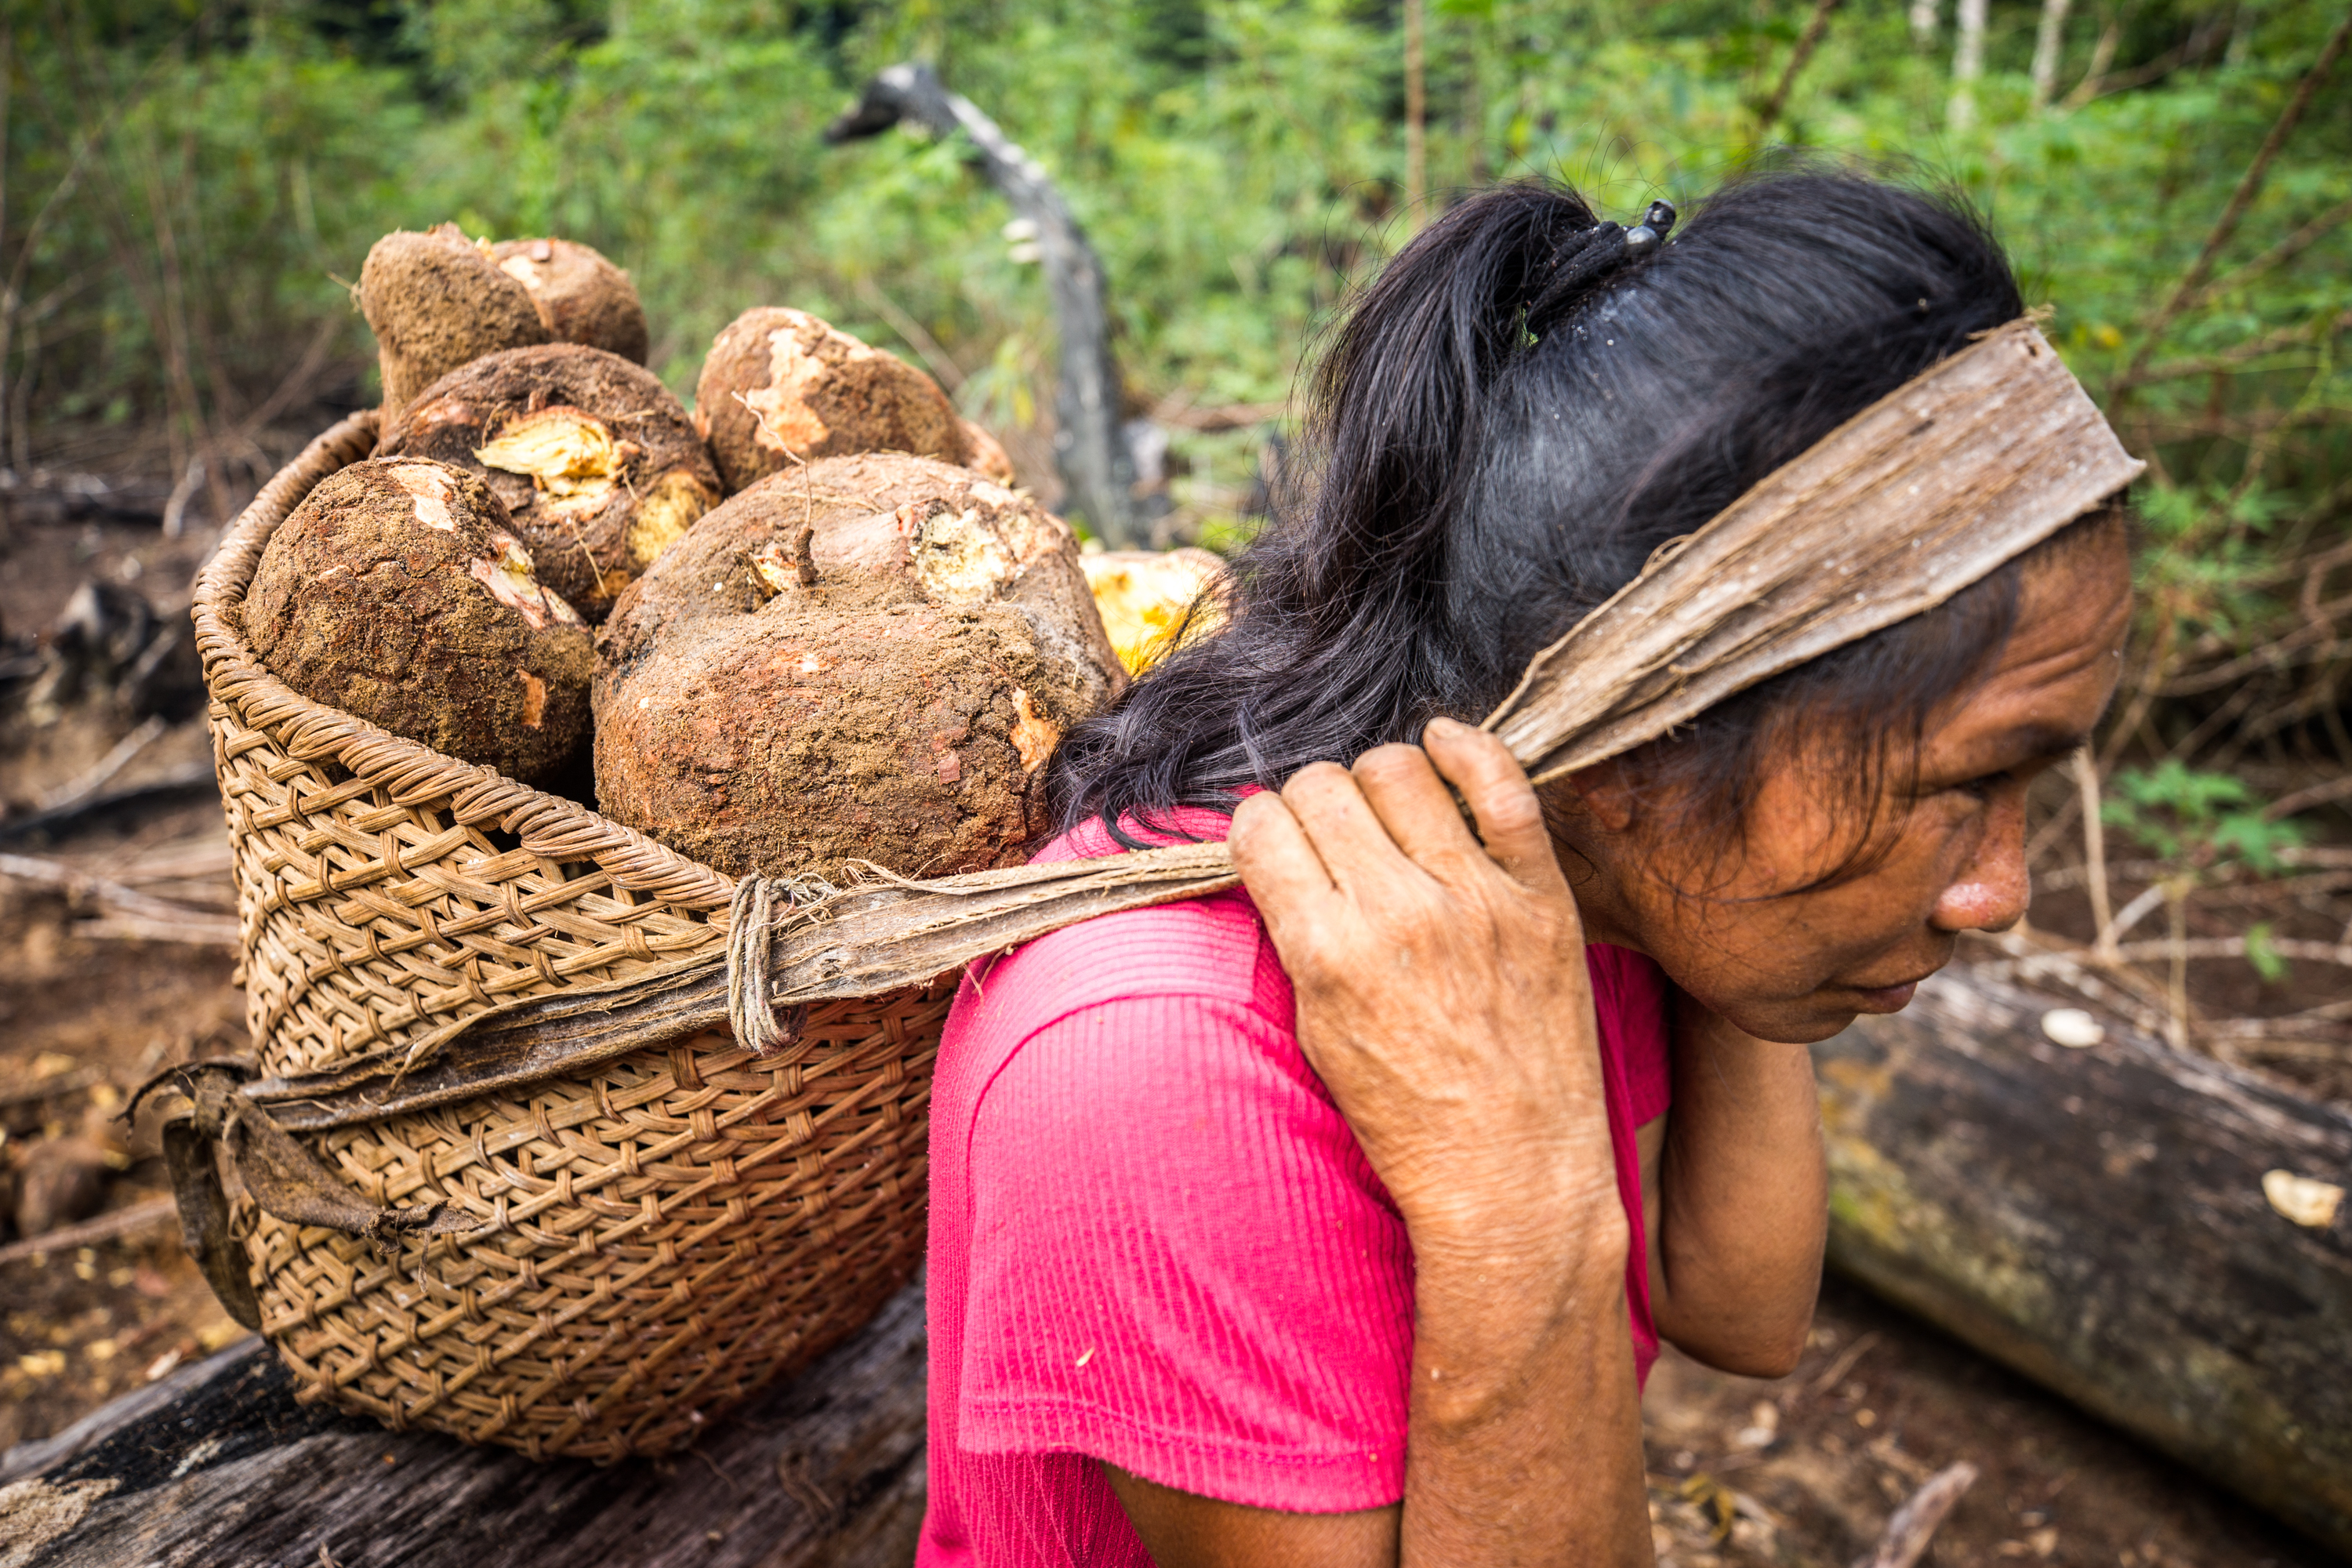 Cristina da Silva, 49 anos, do povo Baniwa, carrega seu pesado aturá, com aproximadamente 30 quilos de maniva|Fellipe Abreu/NatGeo